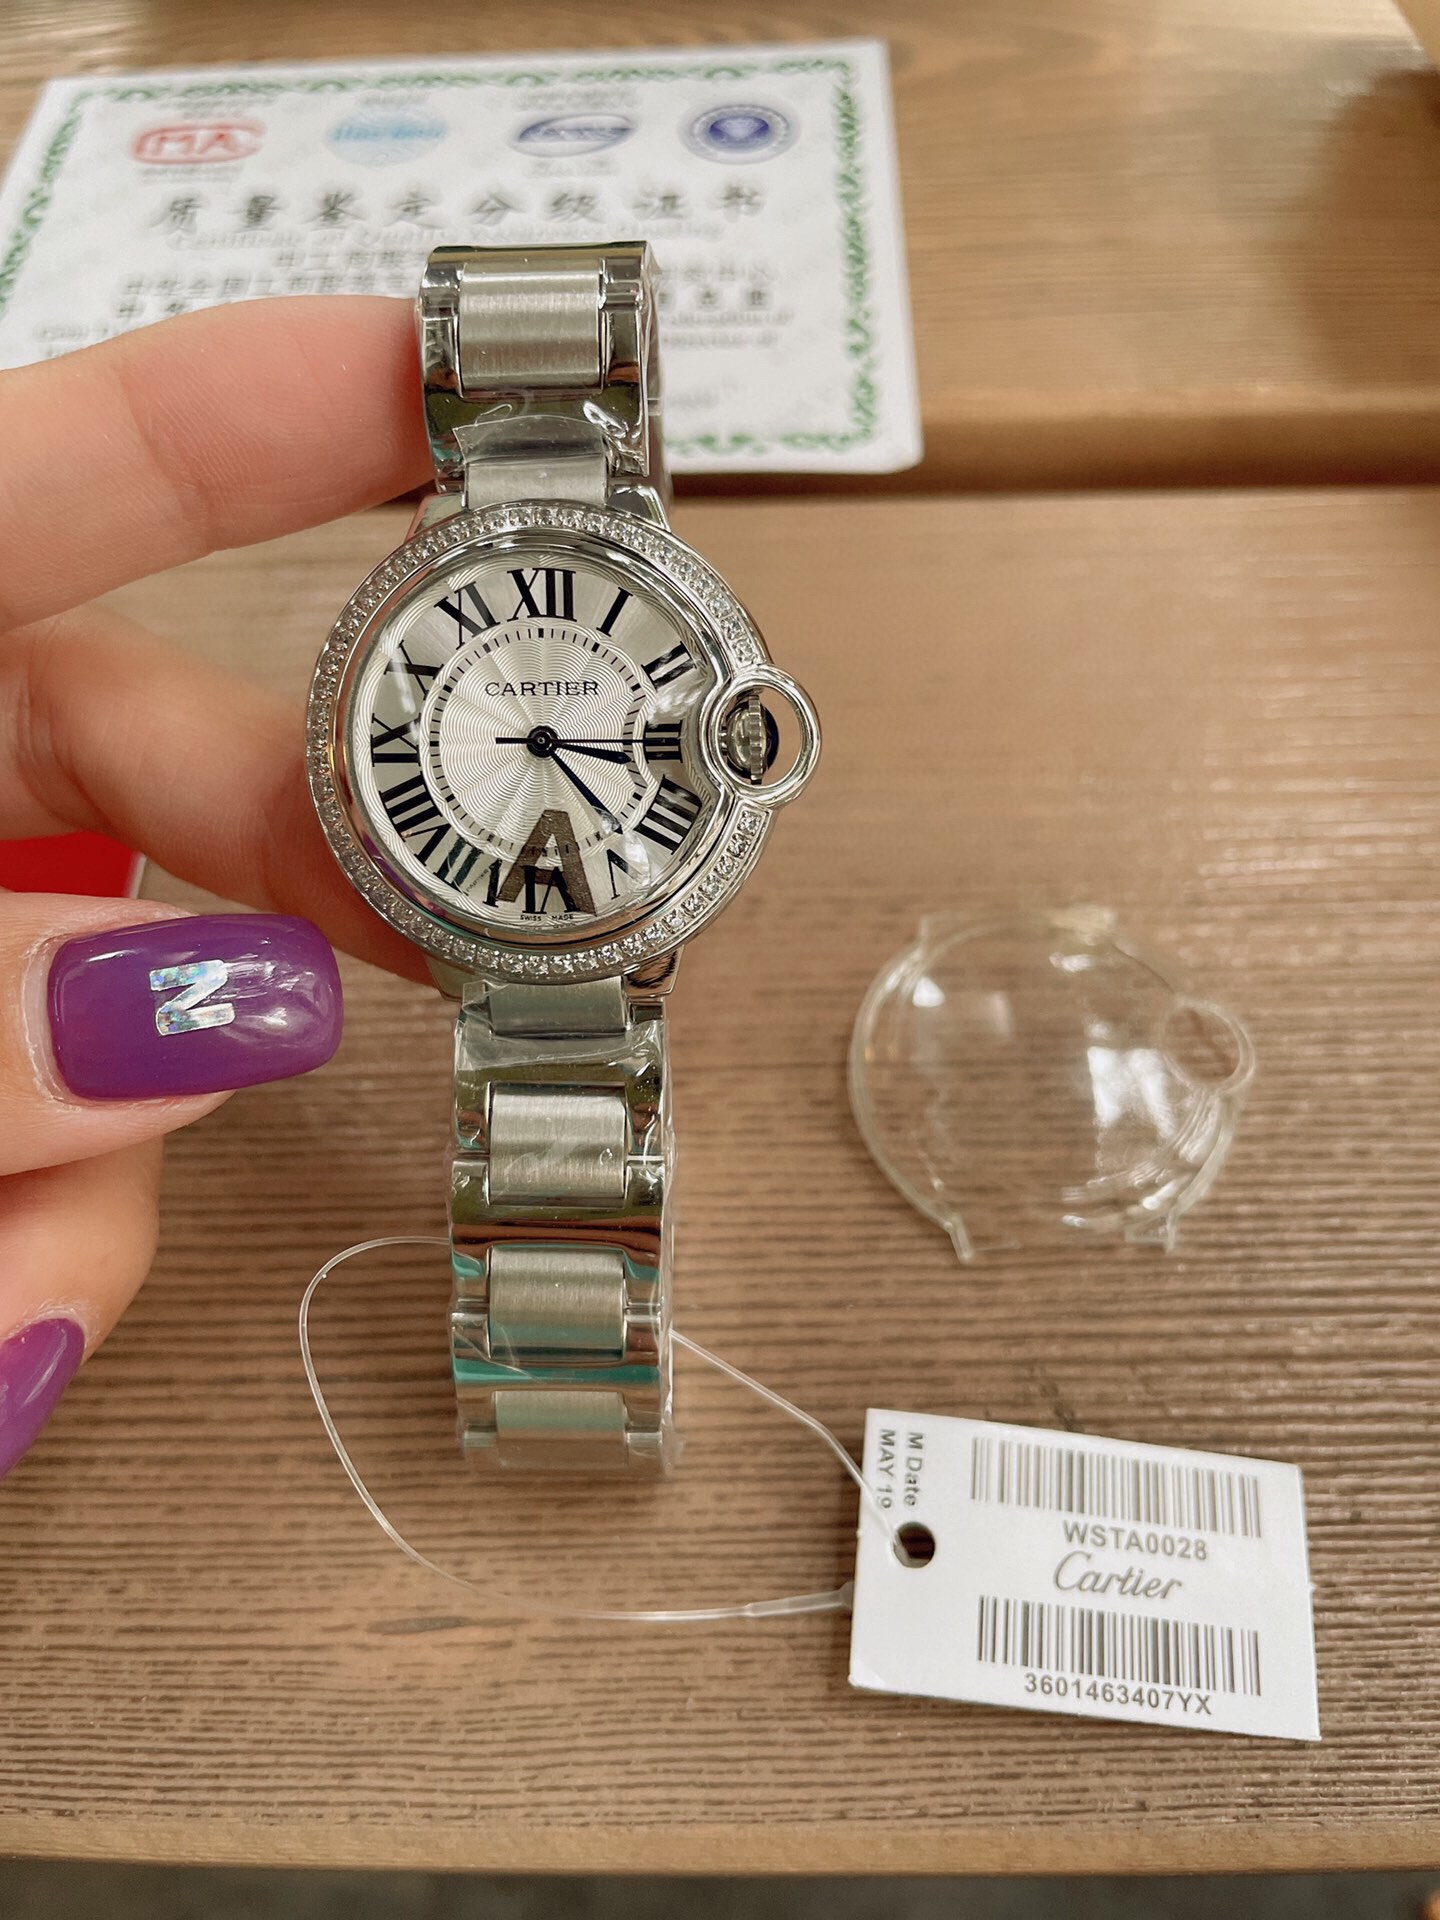 「ダイヤモンドある」CARTIERカルティエ 時計 中身コピー フランス 薄い腕時計 軽量 レディース 最新商品 キラキラ _4